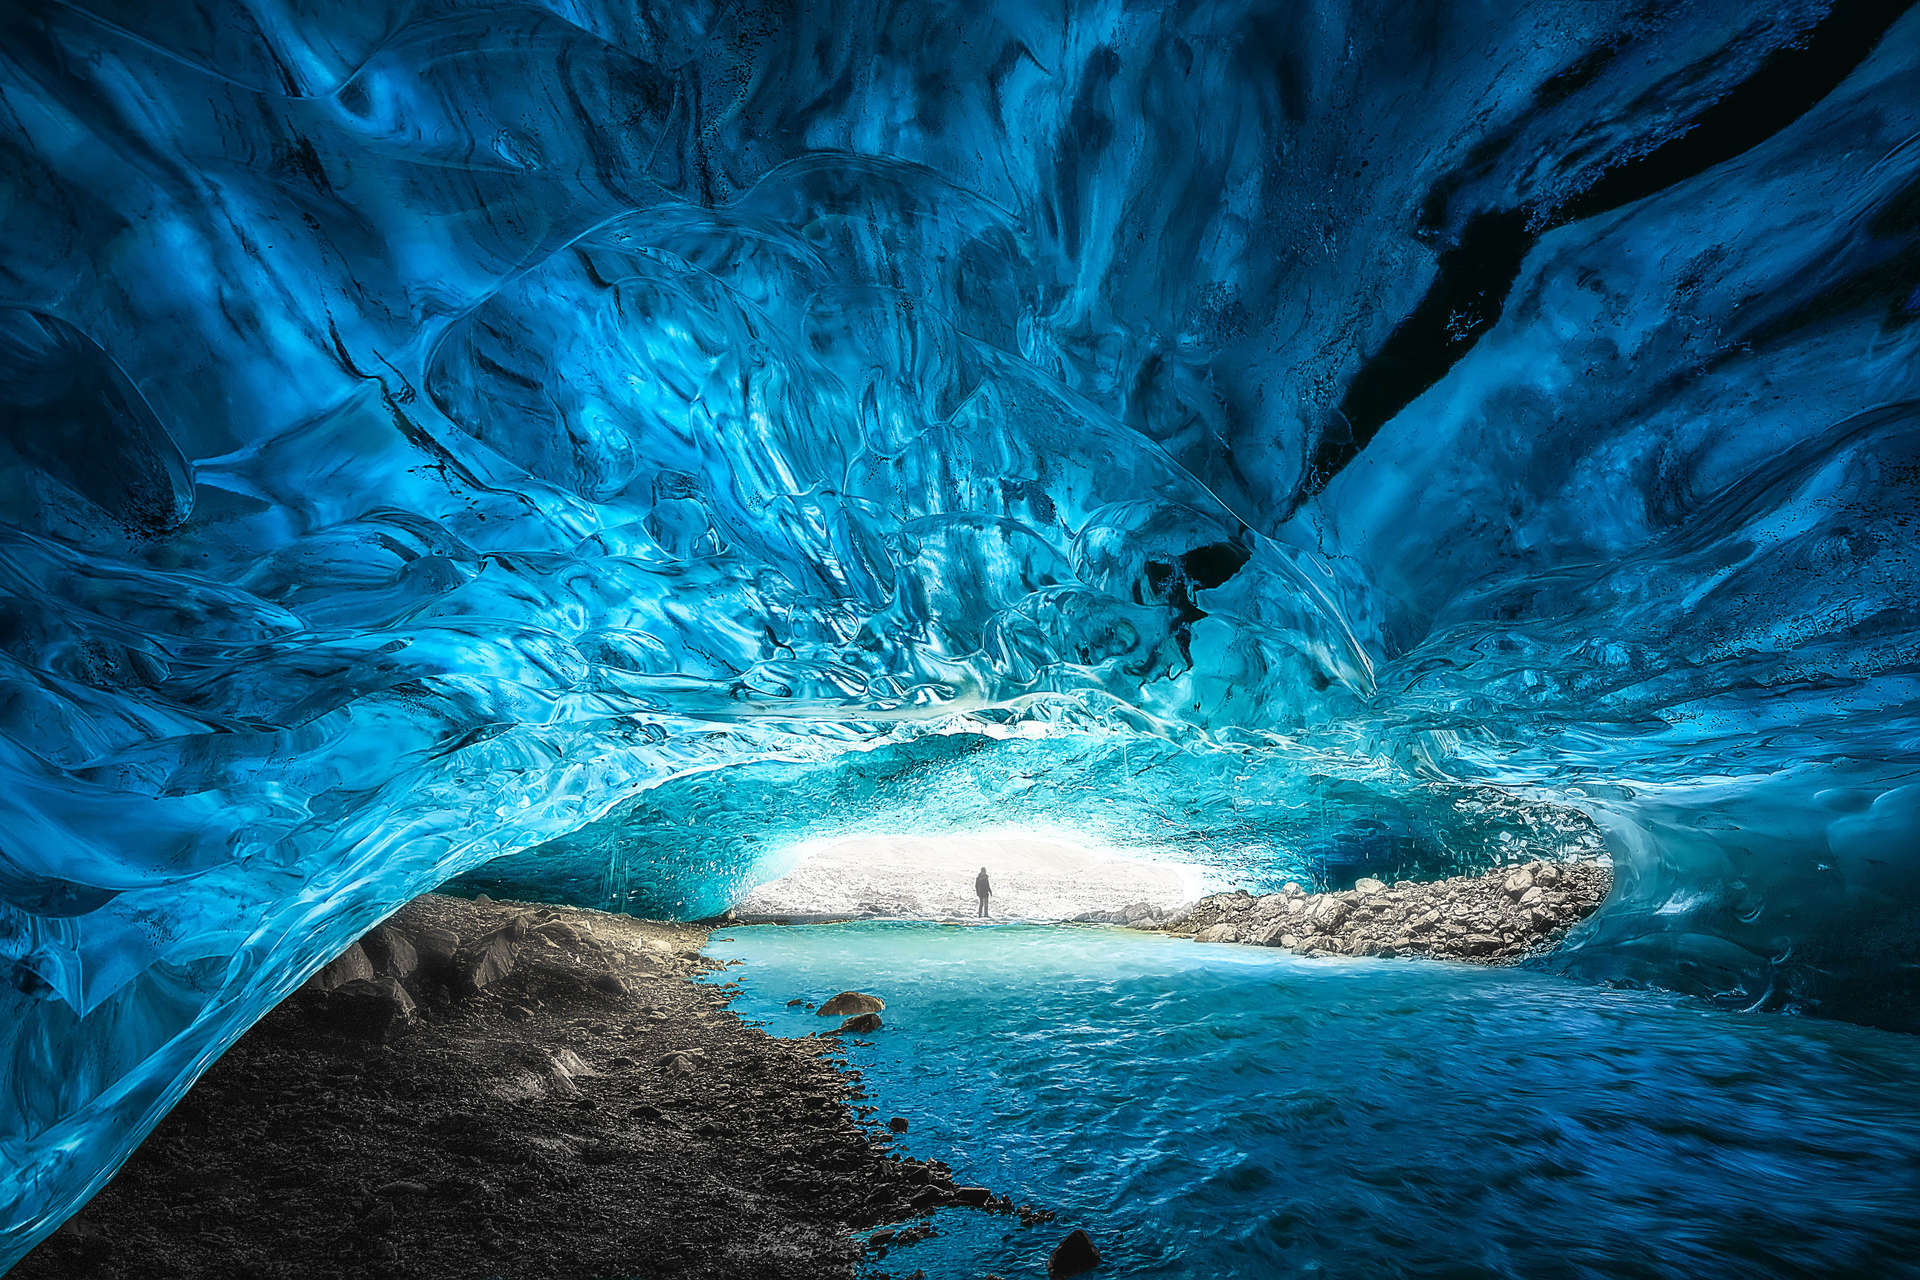 La grotte de glace bleu saphir d'Islande dans le parc national de Vatnajökull